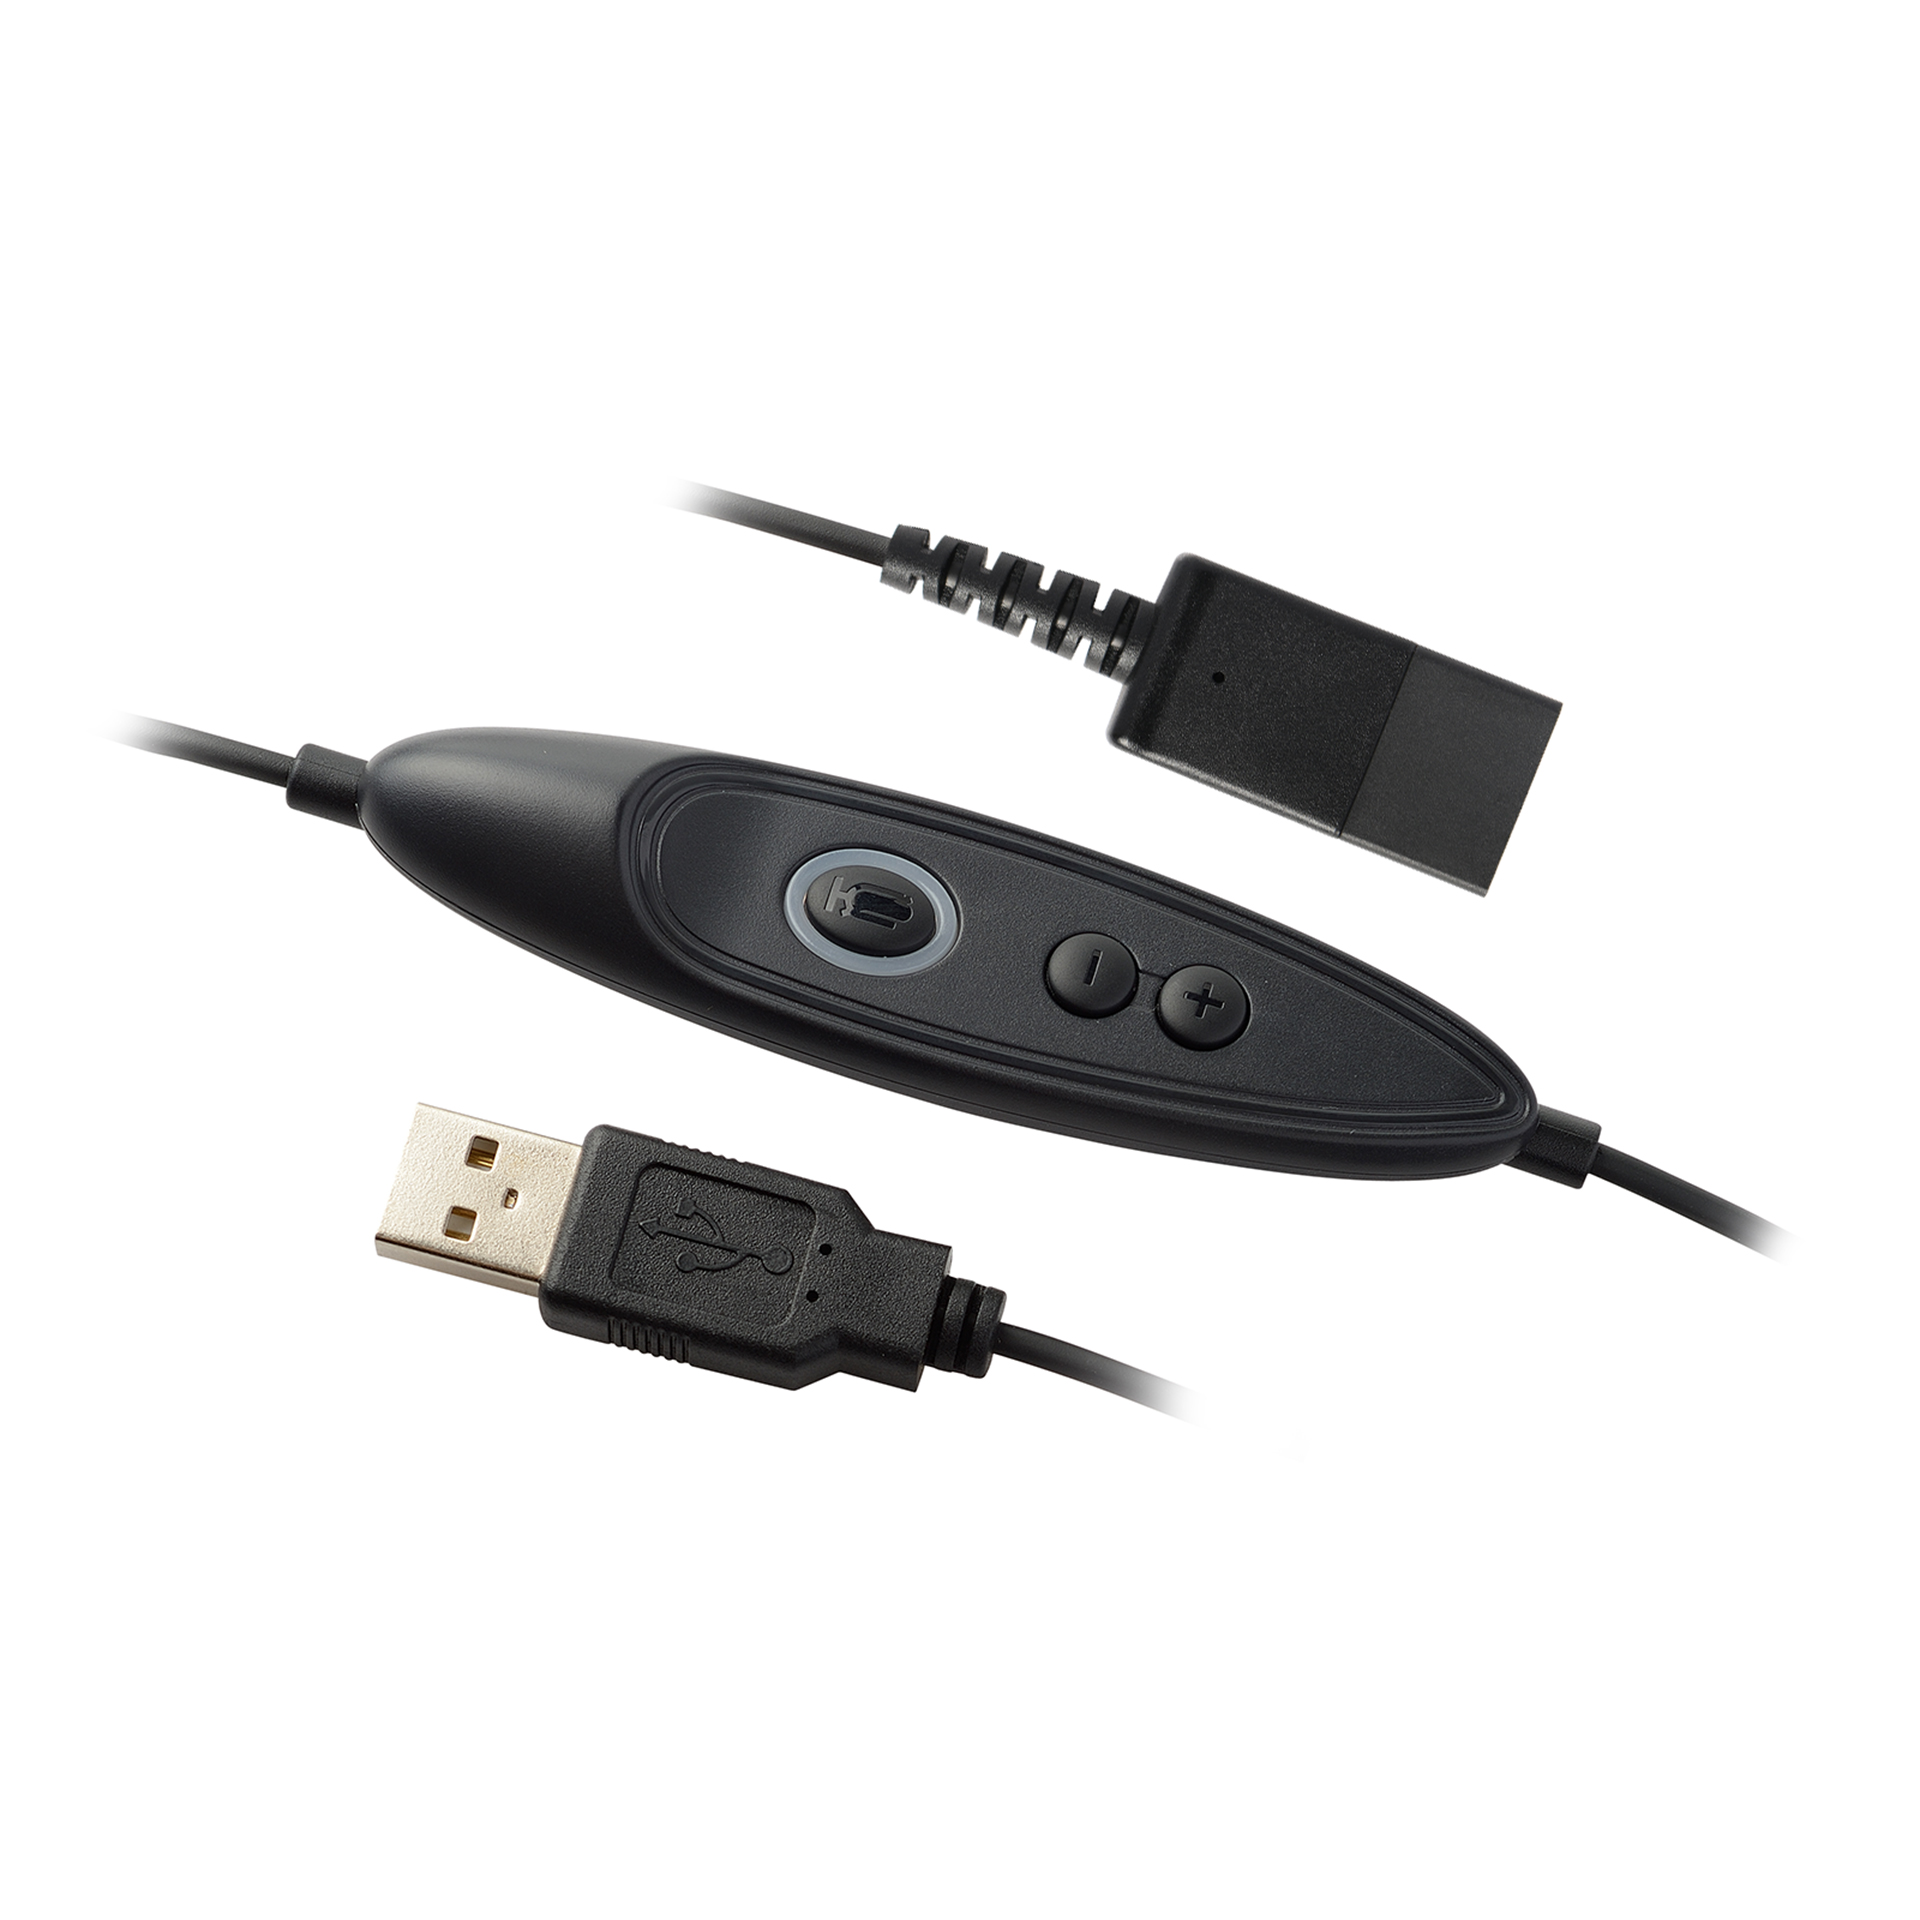 Addasound Anschlusskabel DN1011 USB 2.0 mit Mute-Taste und Lautstärkeregelung GN-QD Stecker